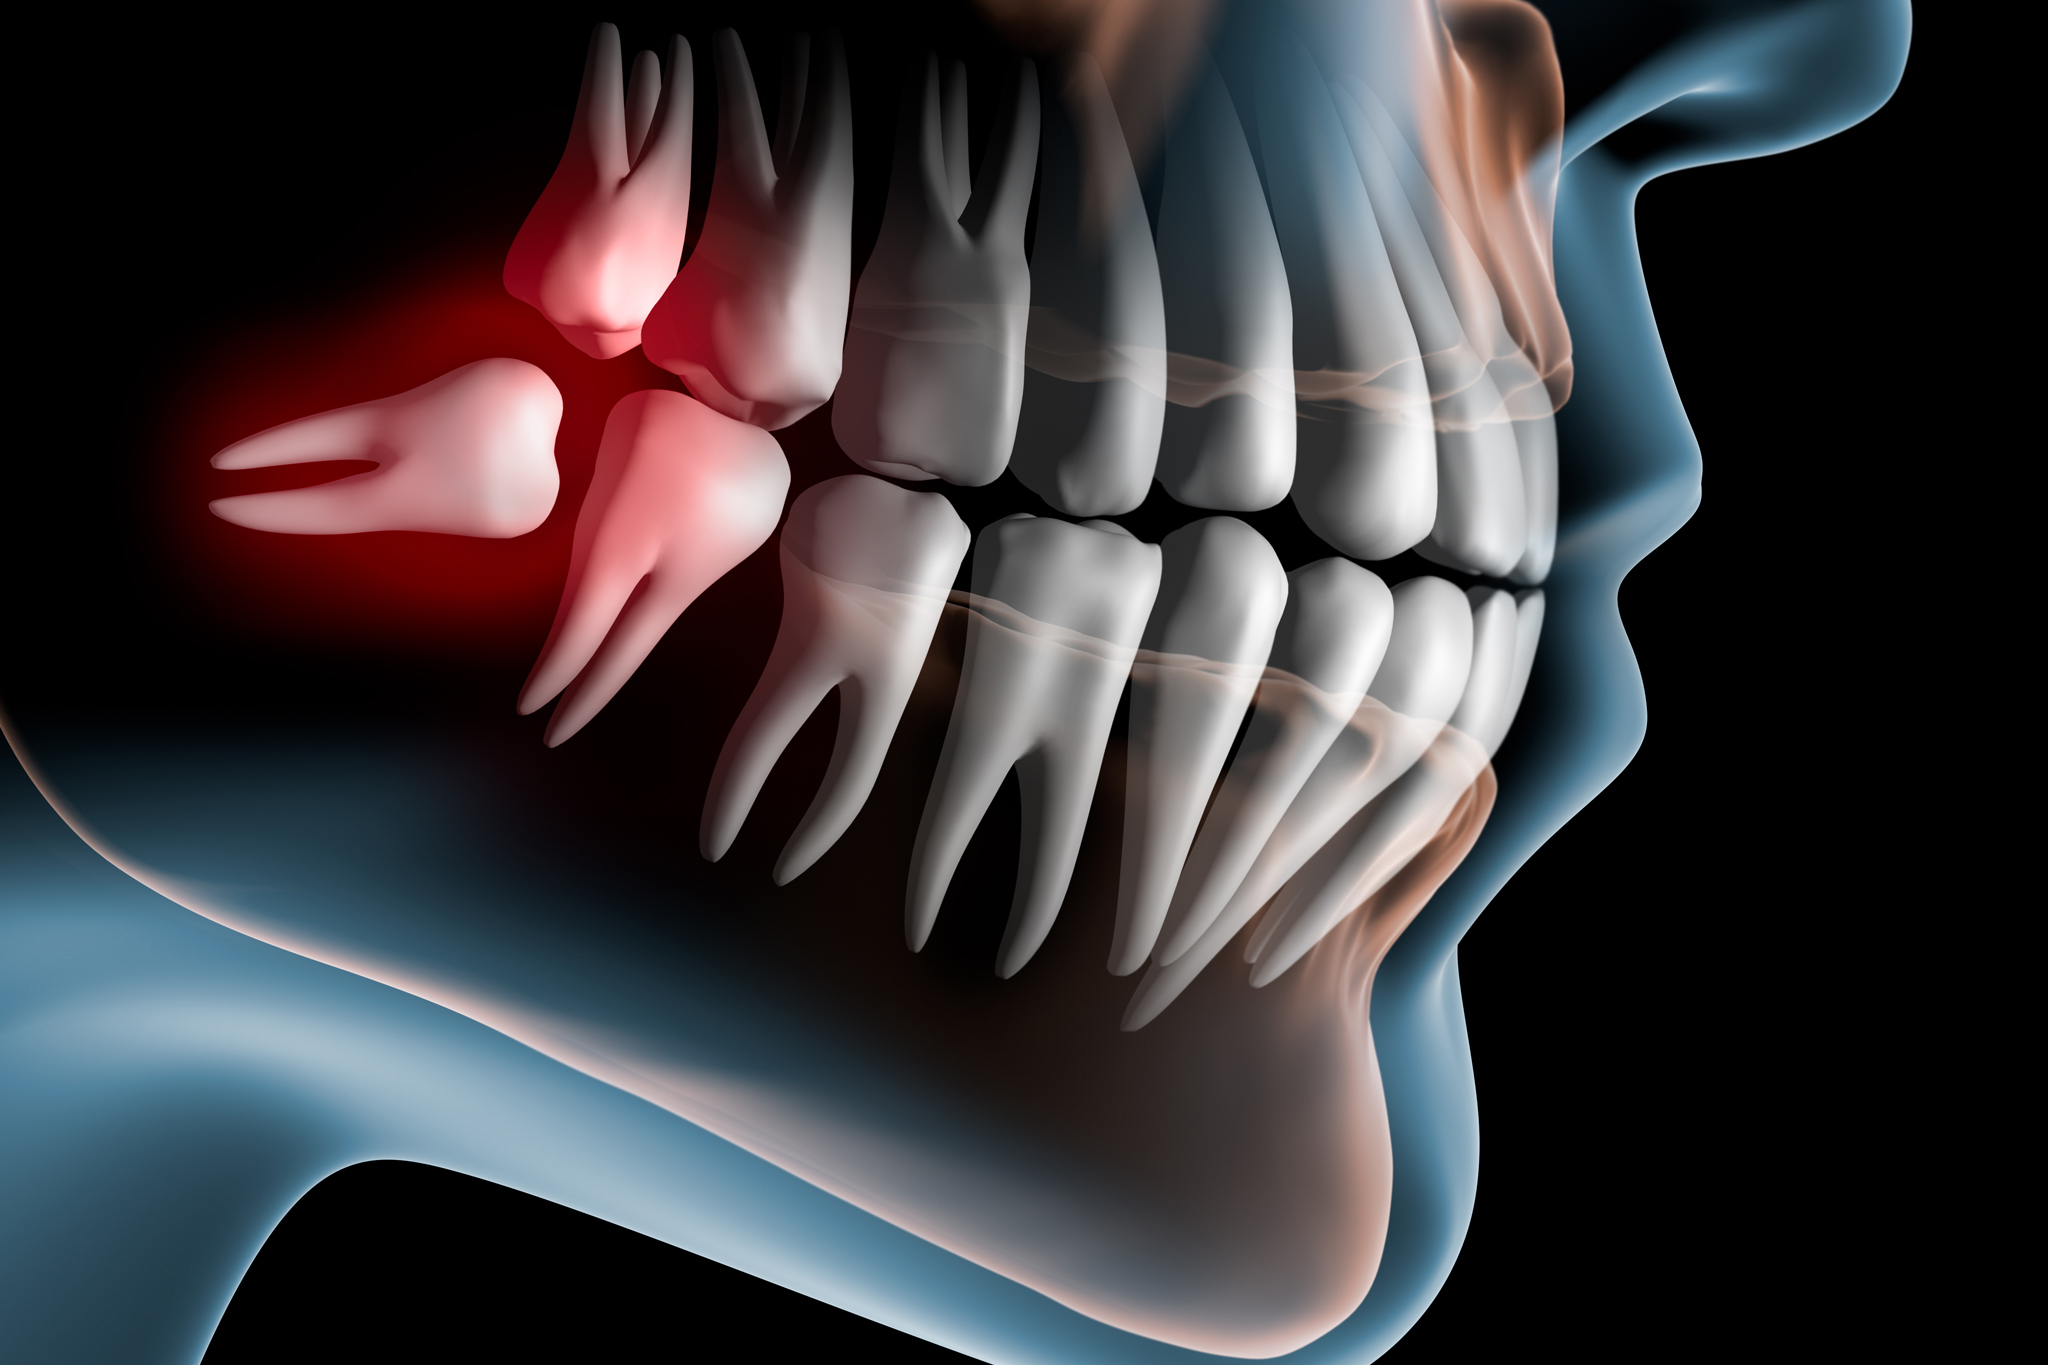 fachzahnarzt oralchirurgie Zahnfleischoperationen wassermuehle stuhr